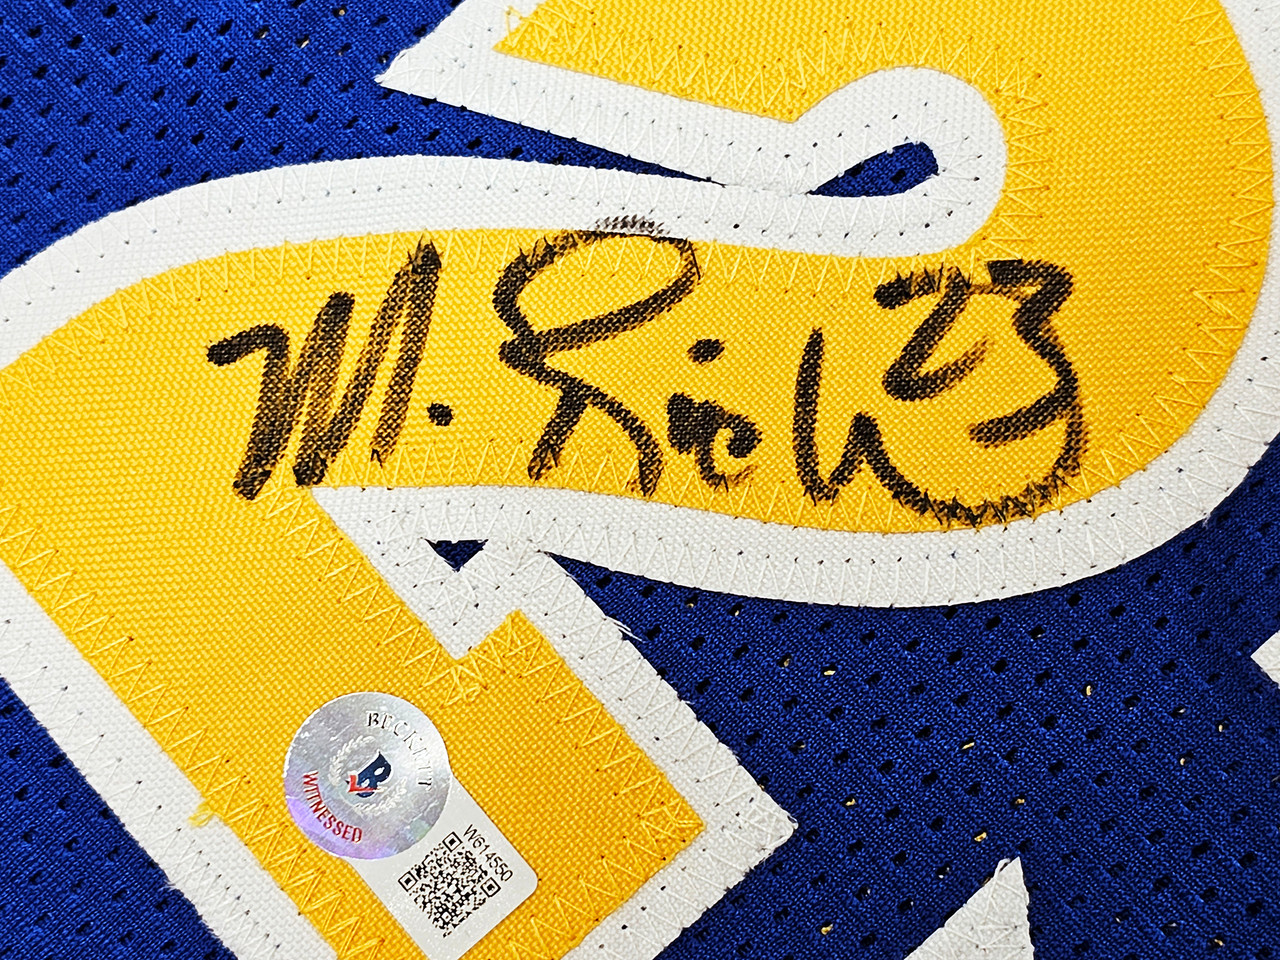 Golden State Warriors Chris Mullin, Tim Hardaway & Mitch Richmond Autographed Blue Jersey Run TMC HOF Beckett BAS Witness